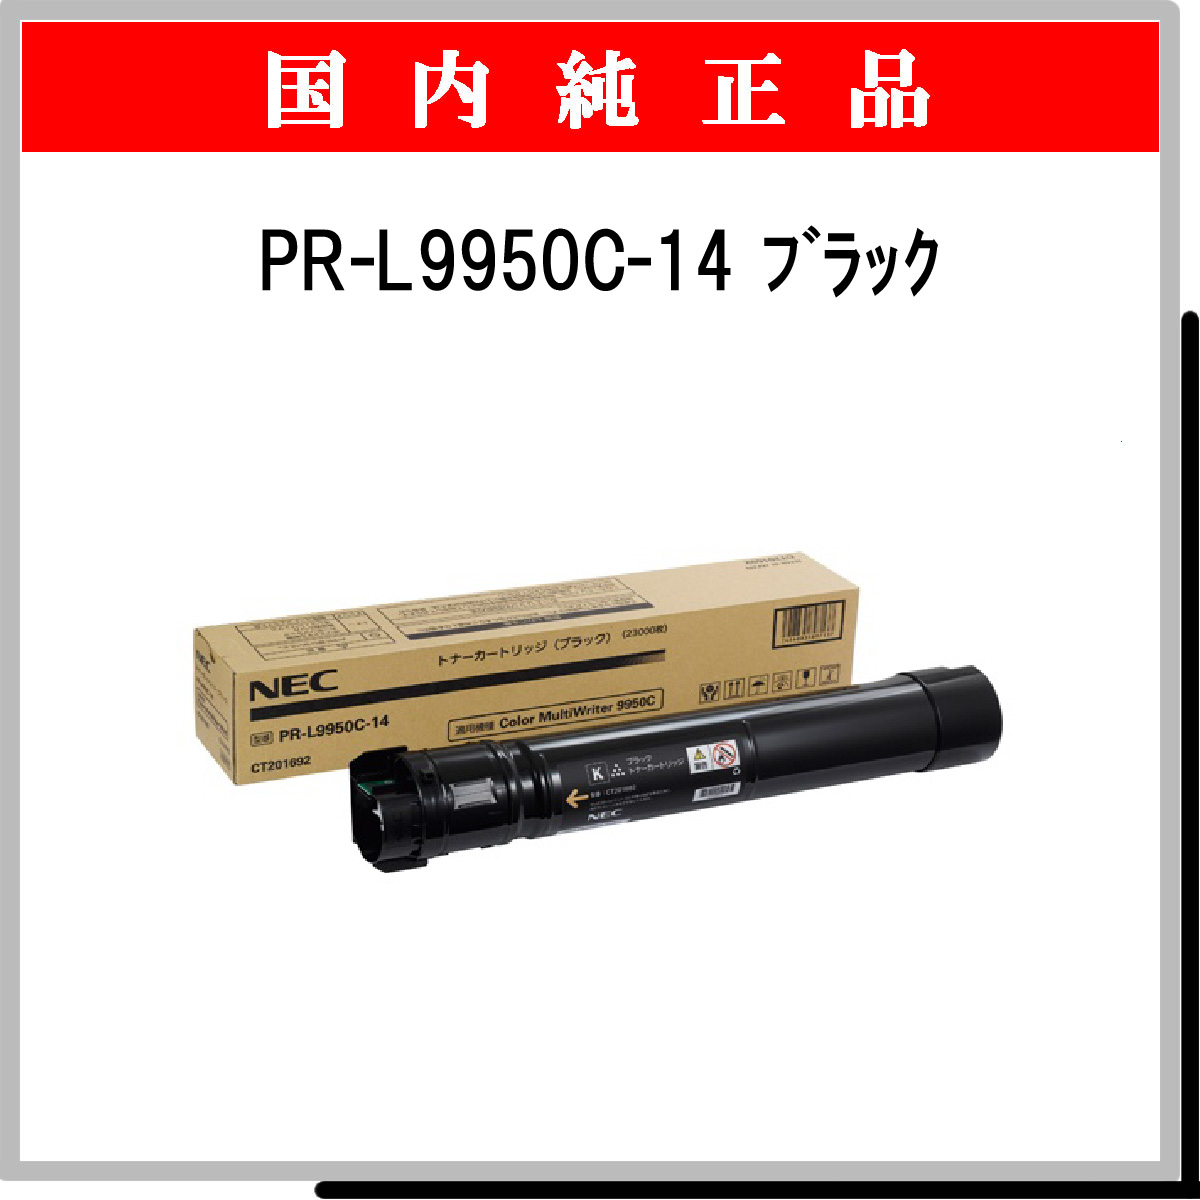 PR-L9950C-14 純正